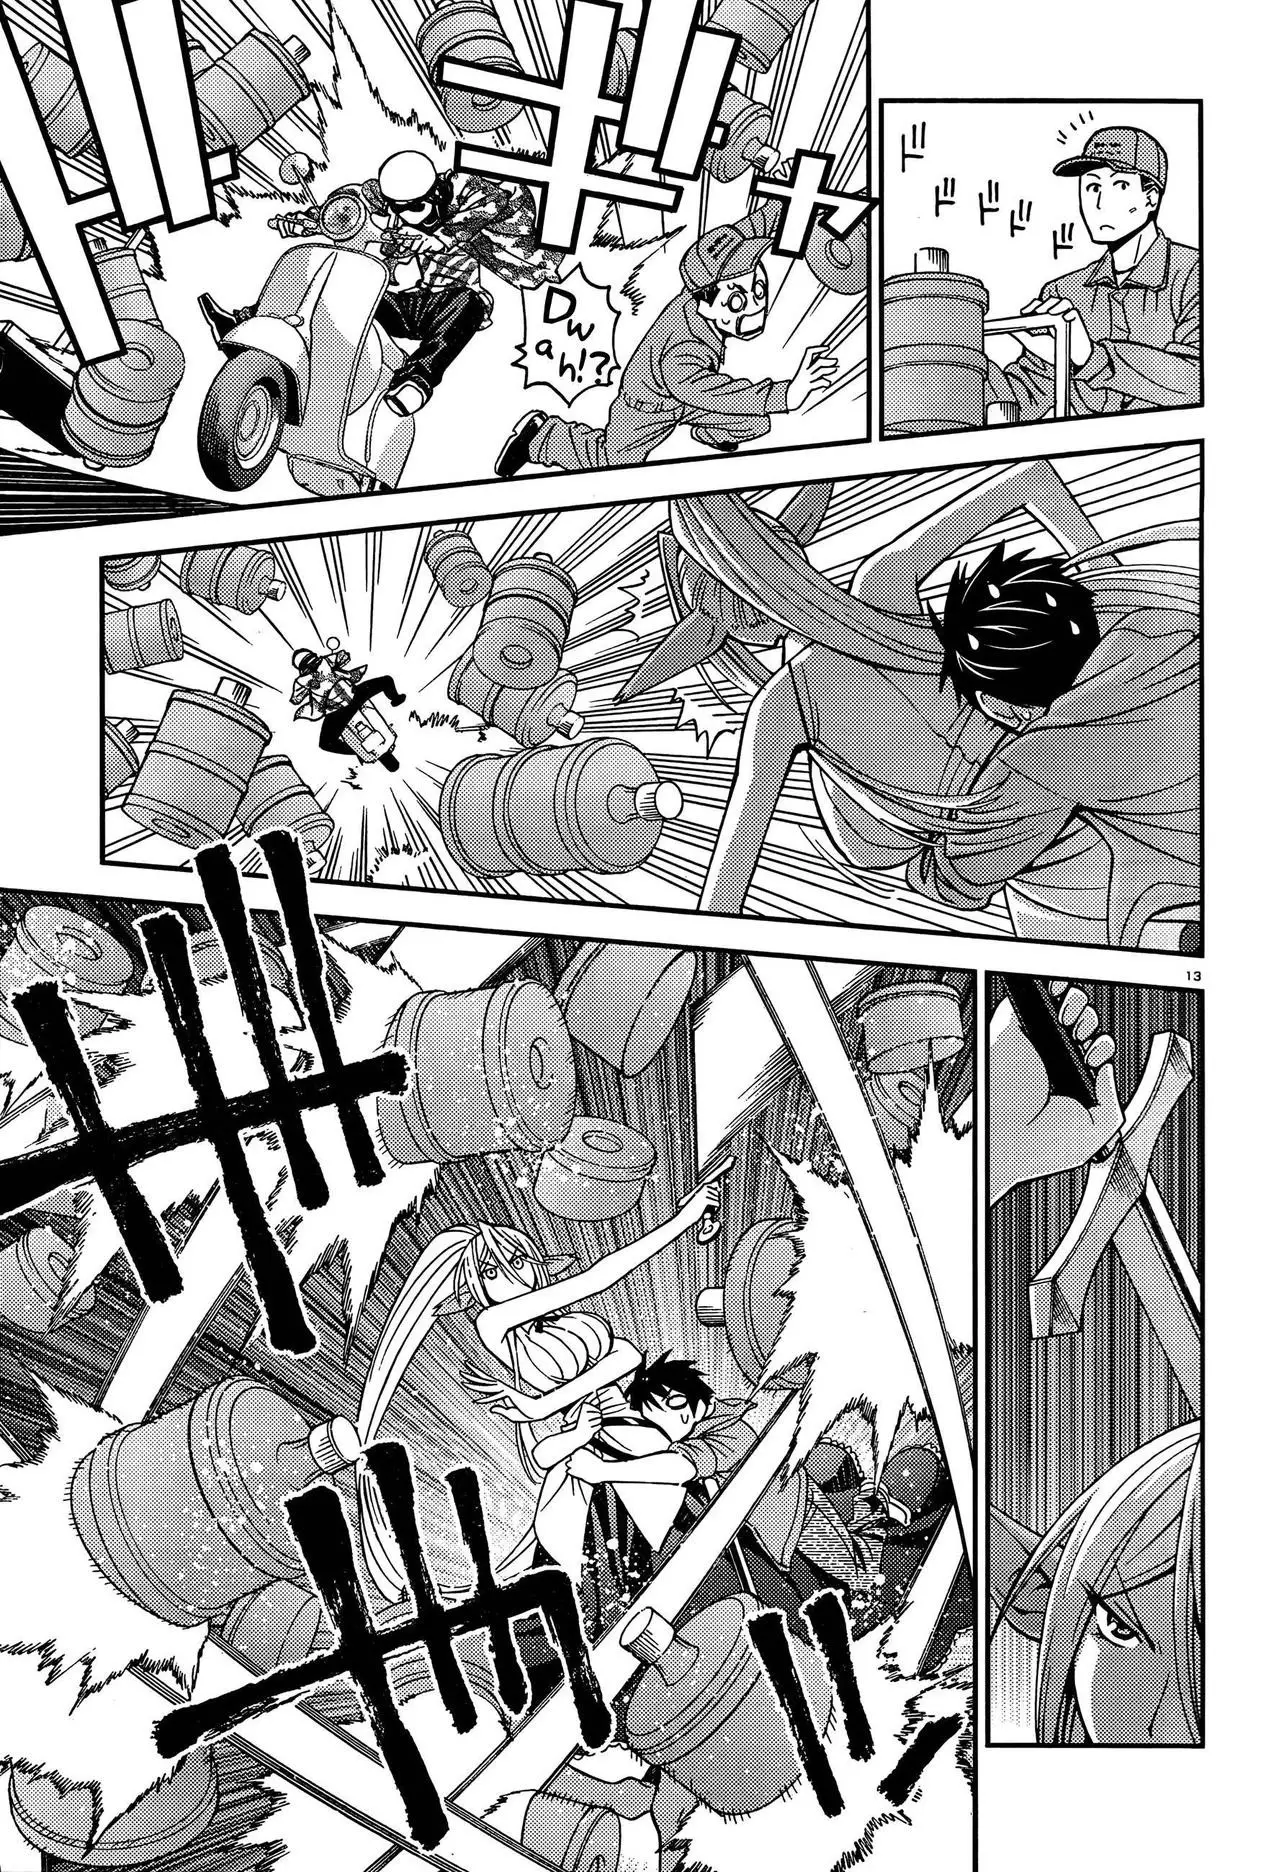 Monster Musume no Iru Nichijou - 4 page p_00013